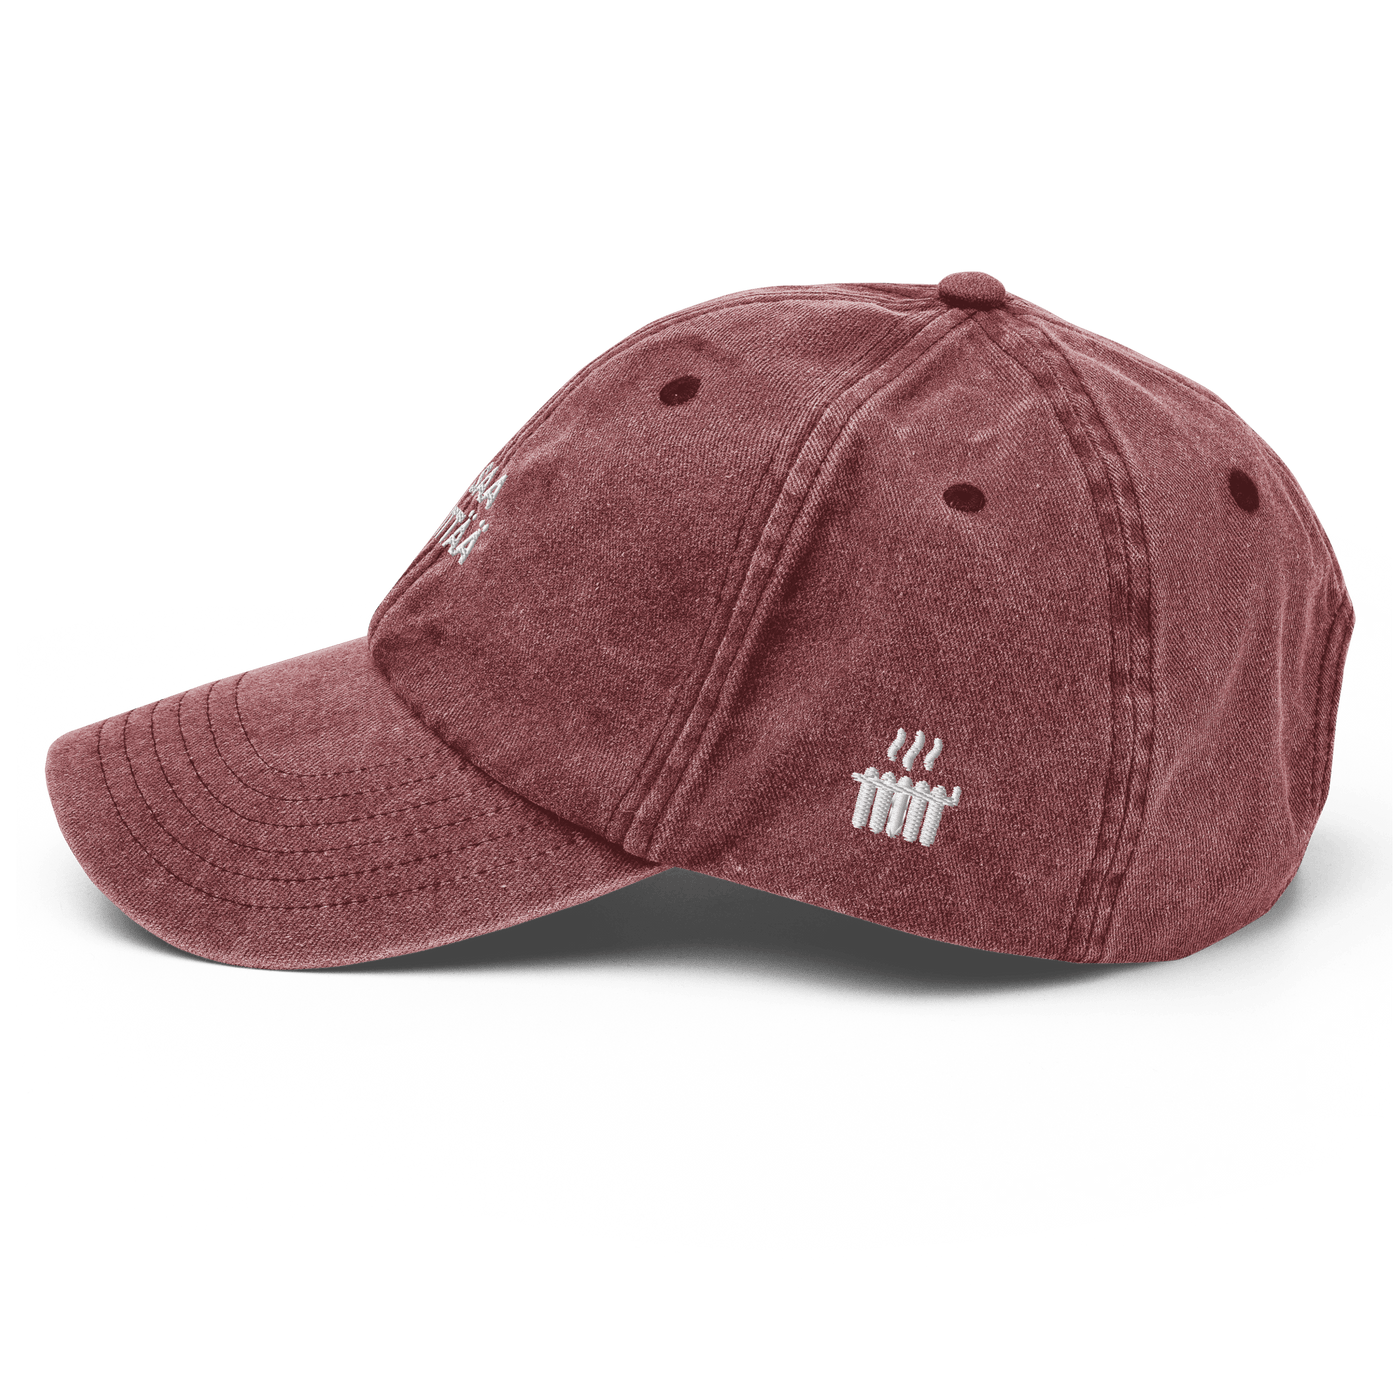 EI SAA PEITTÄÄ - Vintage Hat - Vintage Red - - Just Another Cap Store